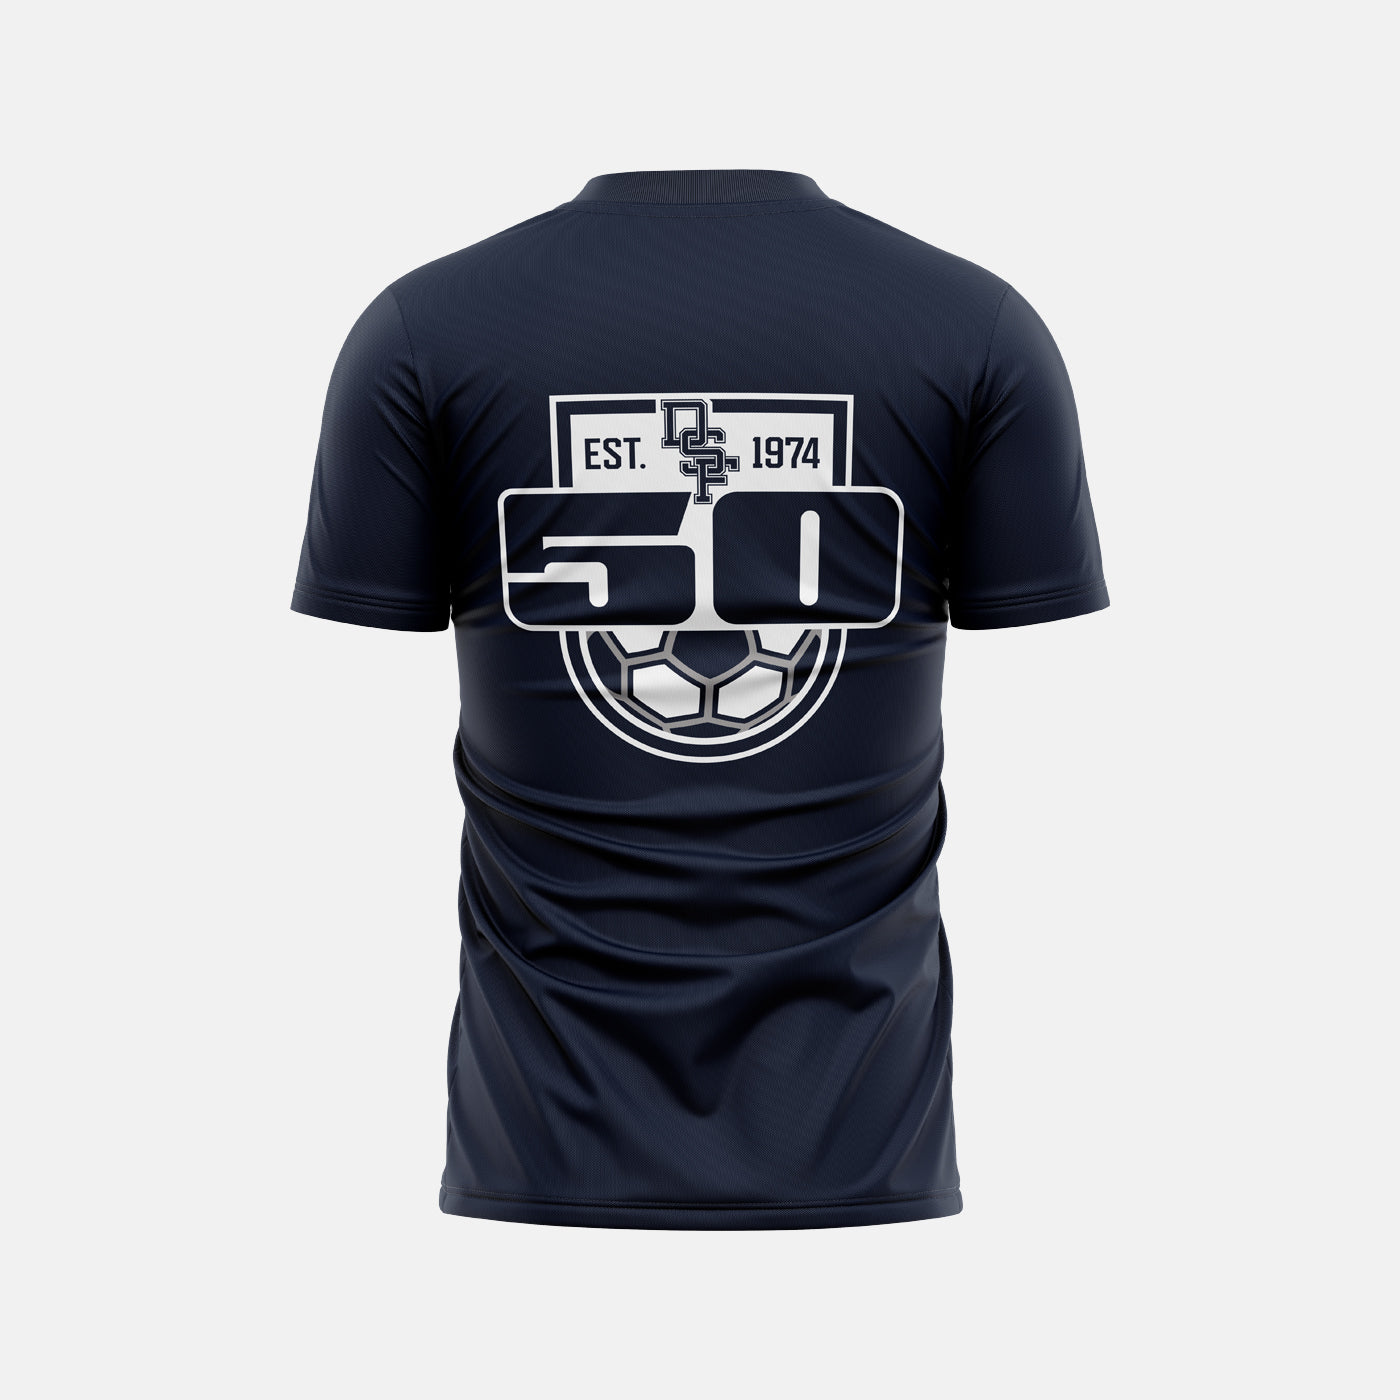 Douglas Freeman Soccer - Classic Fan's Shirt